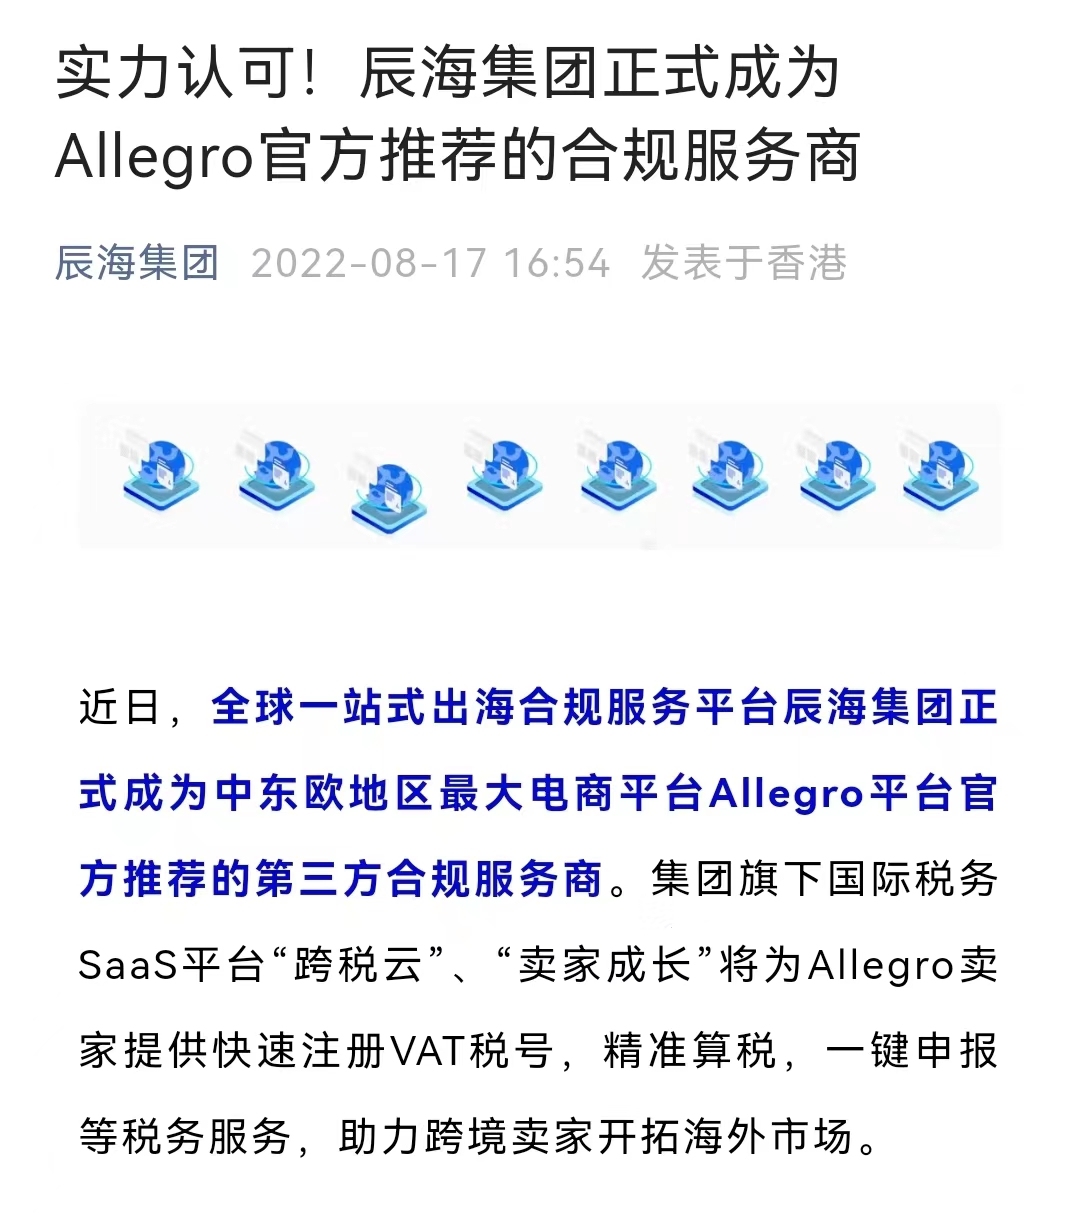 辰海集团正式成为Allegro官方推荐合规服务商